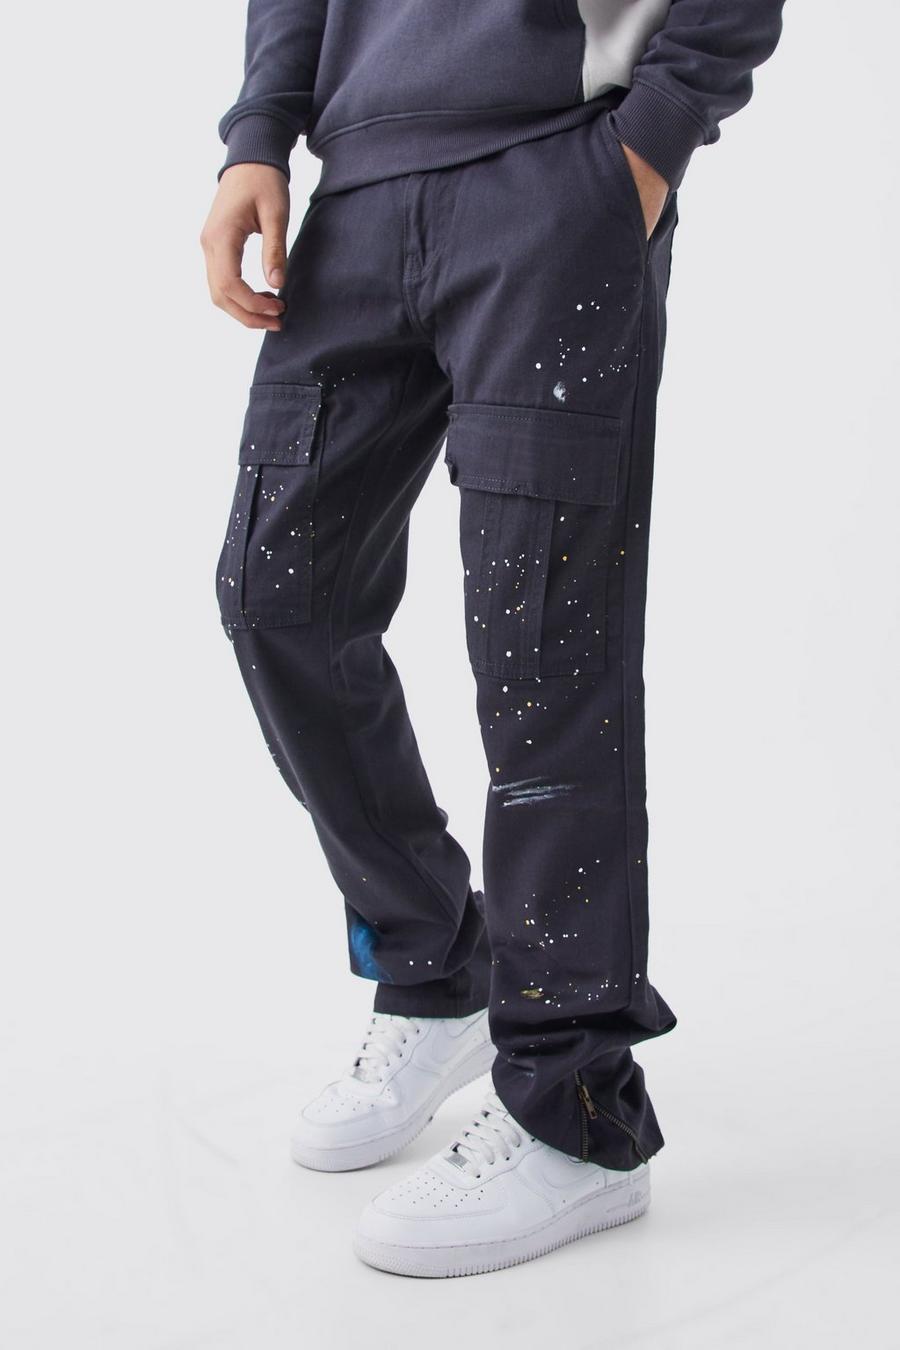 Pantaloni Cargo Slim Fit con zip, pieghe sul fondo e schizzi di colore, Charcoal